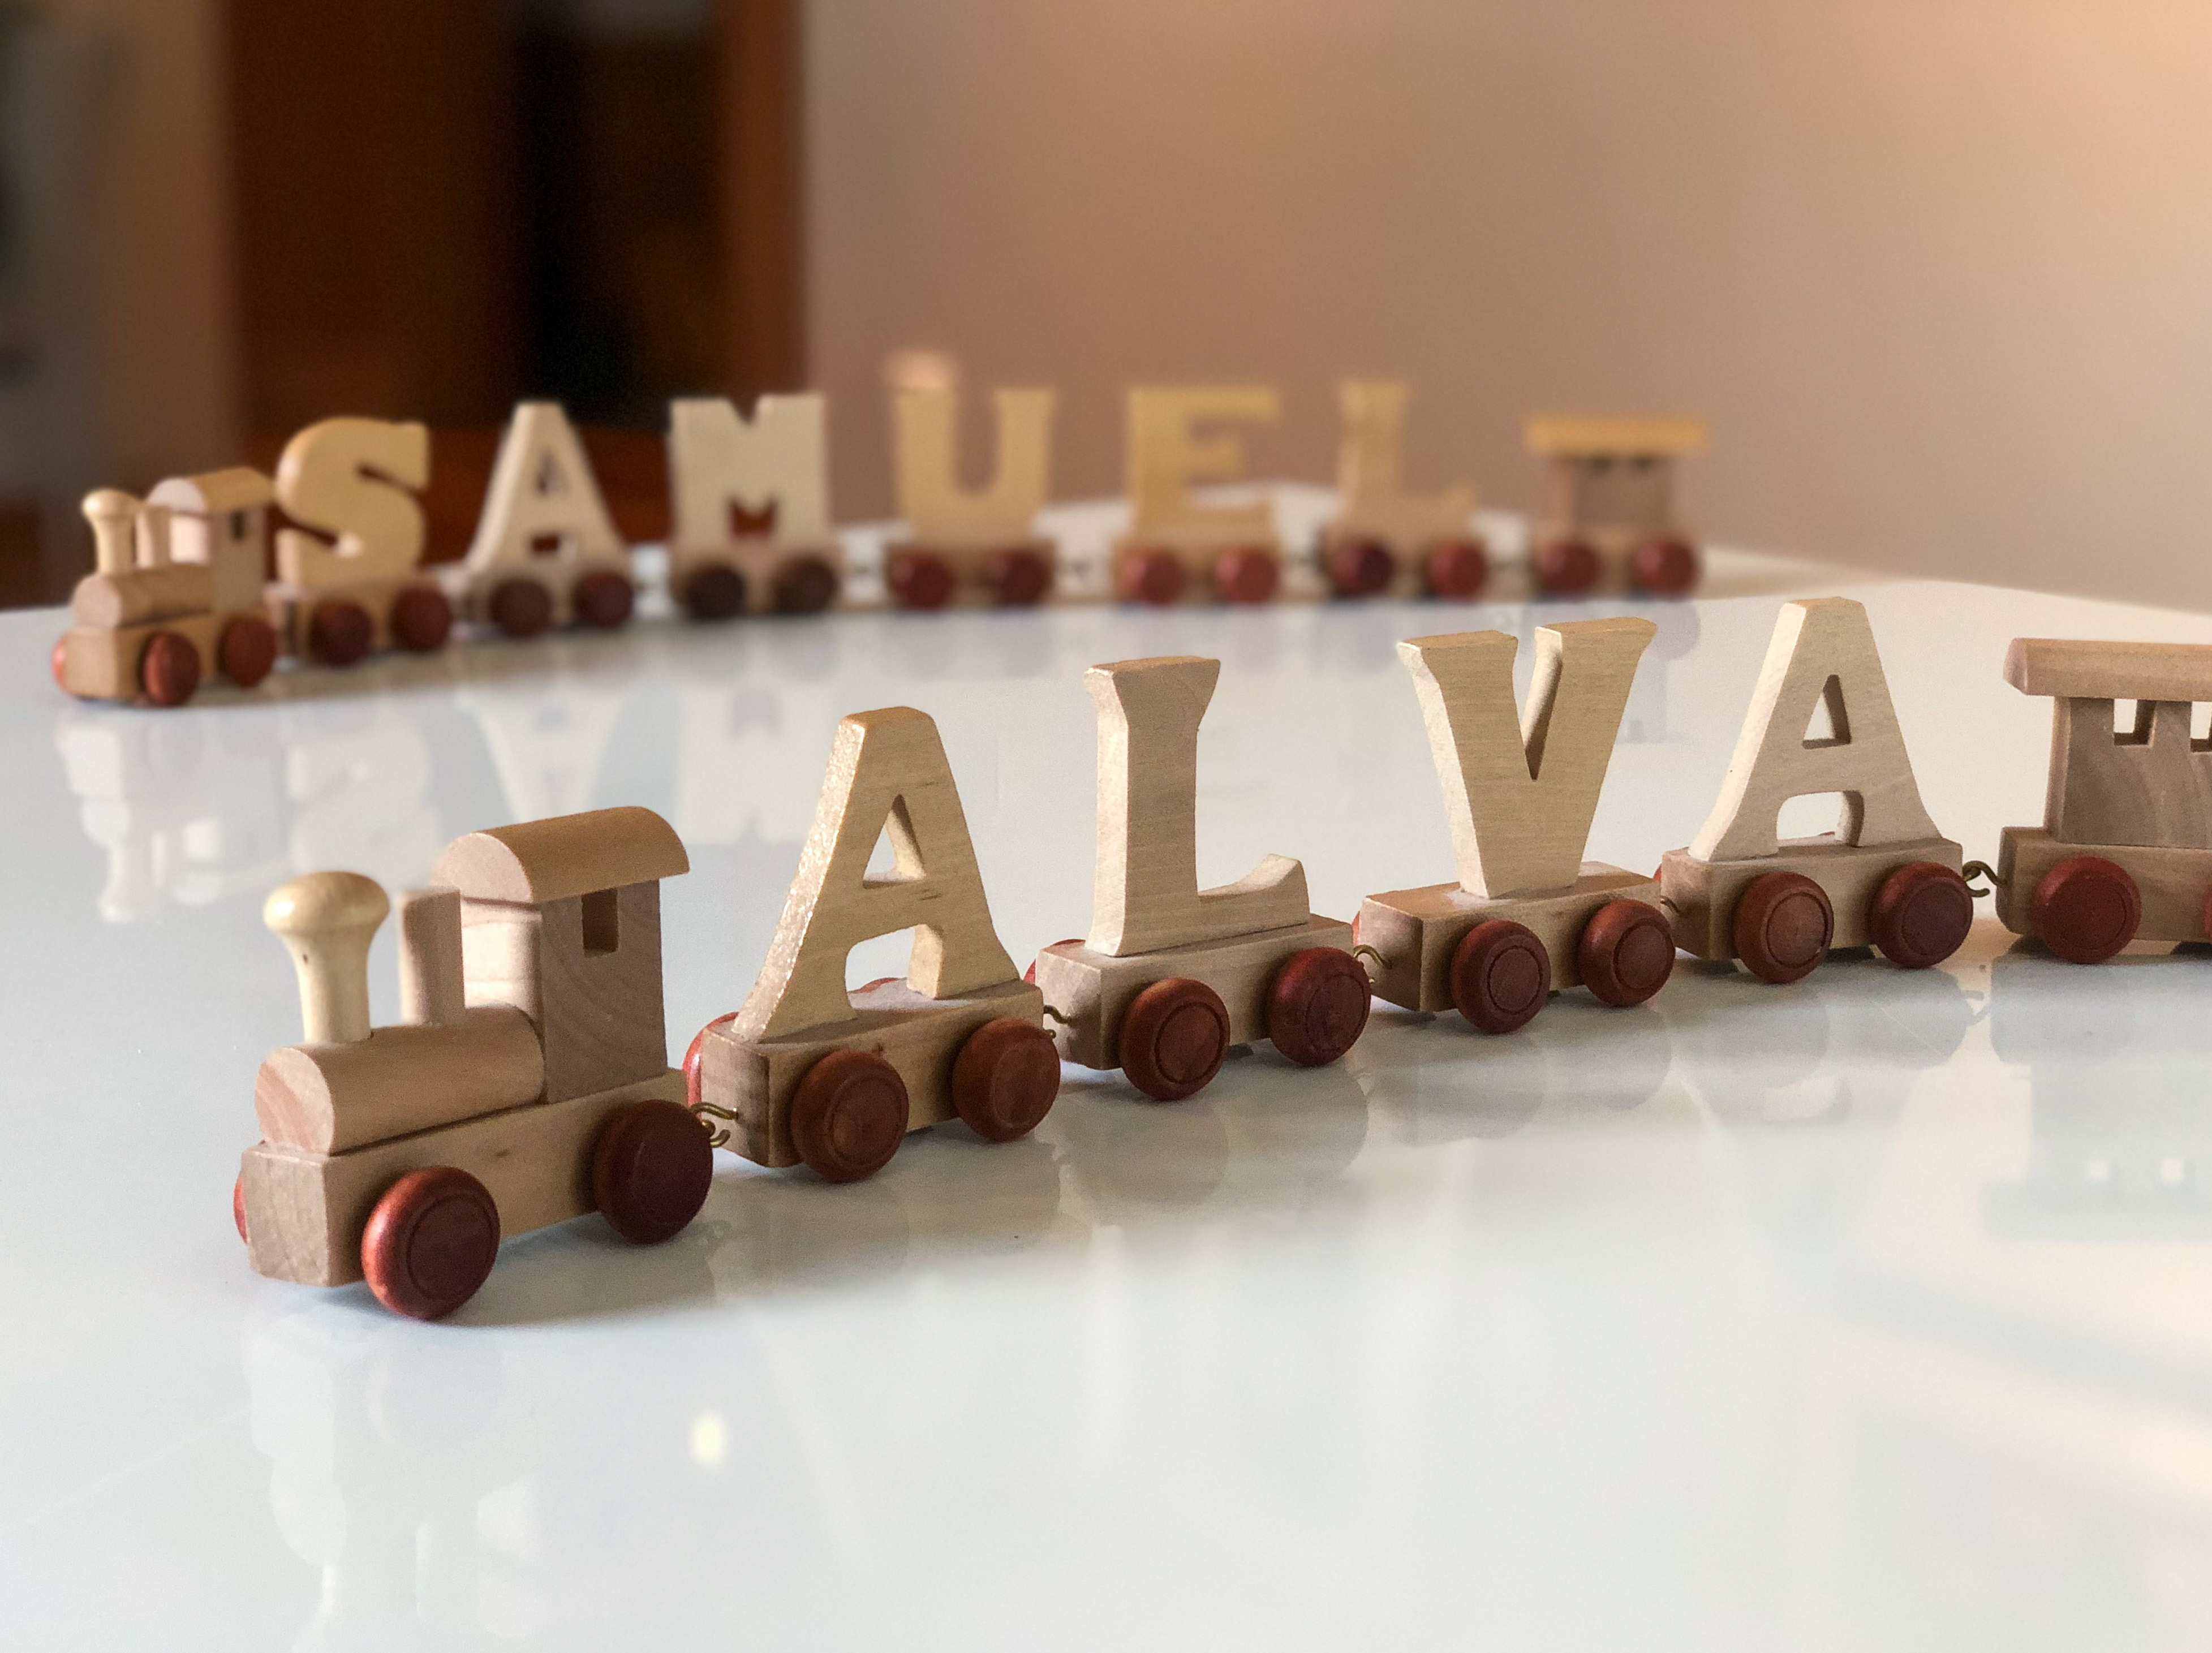 Två leksakståg med bokstäver på vagnarna som bildar namnen Samuel och Alva.